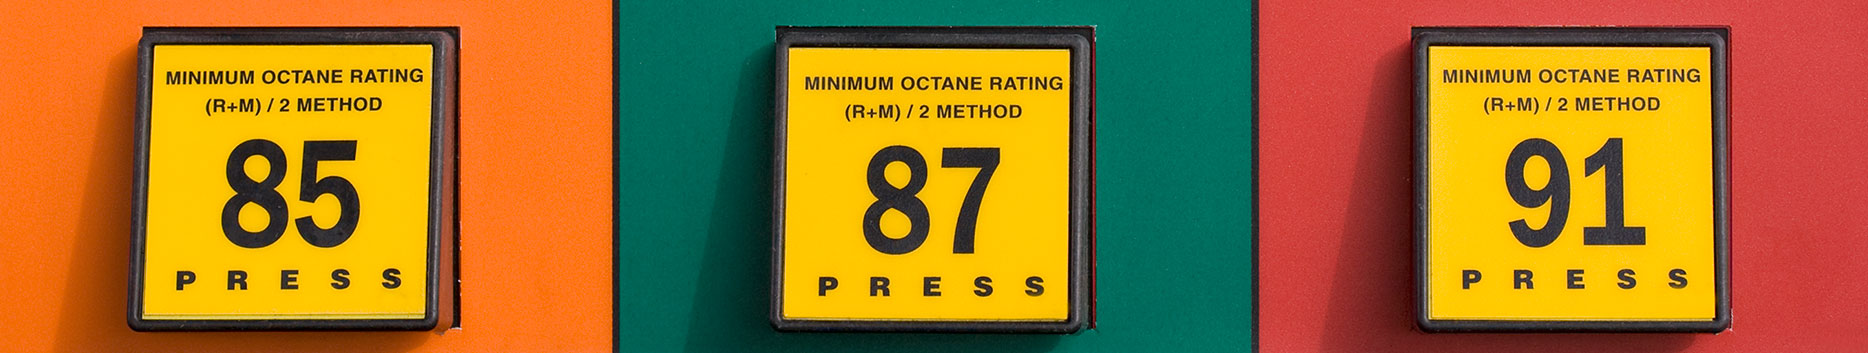 Octane Ratings